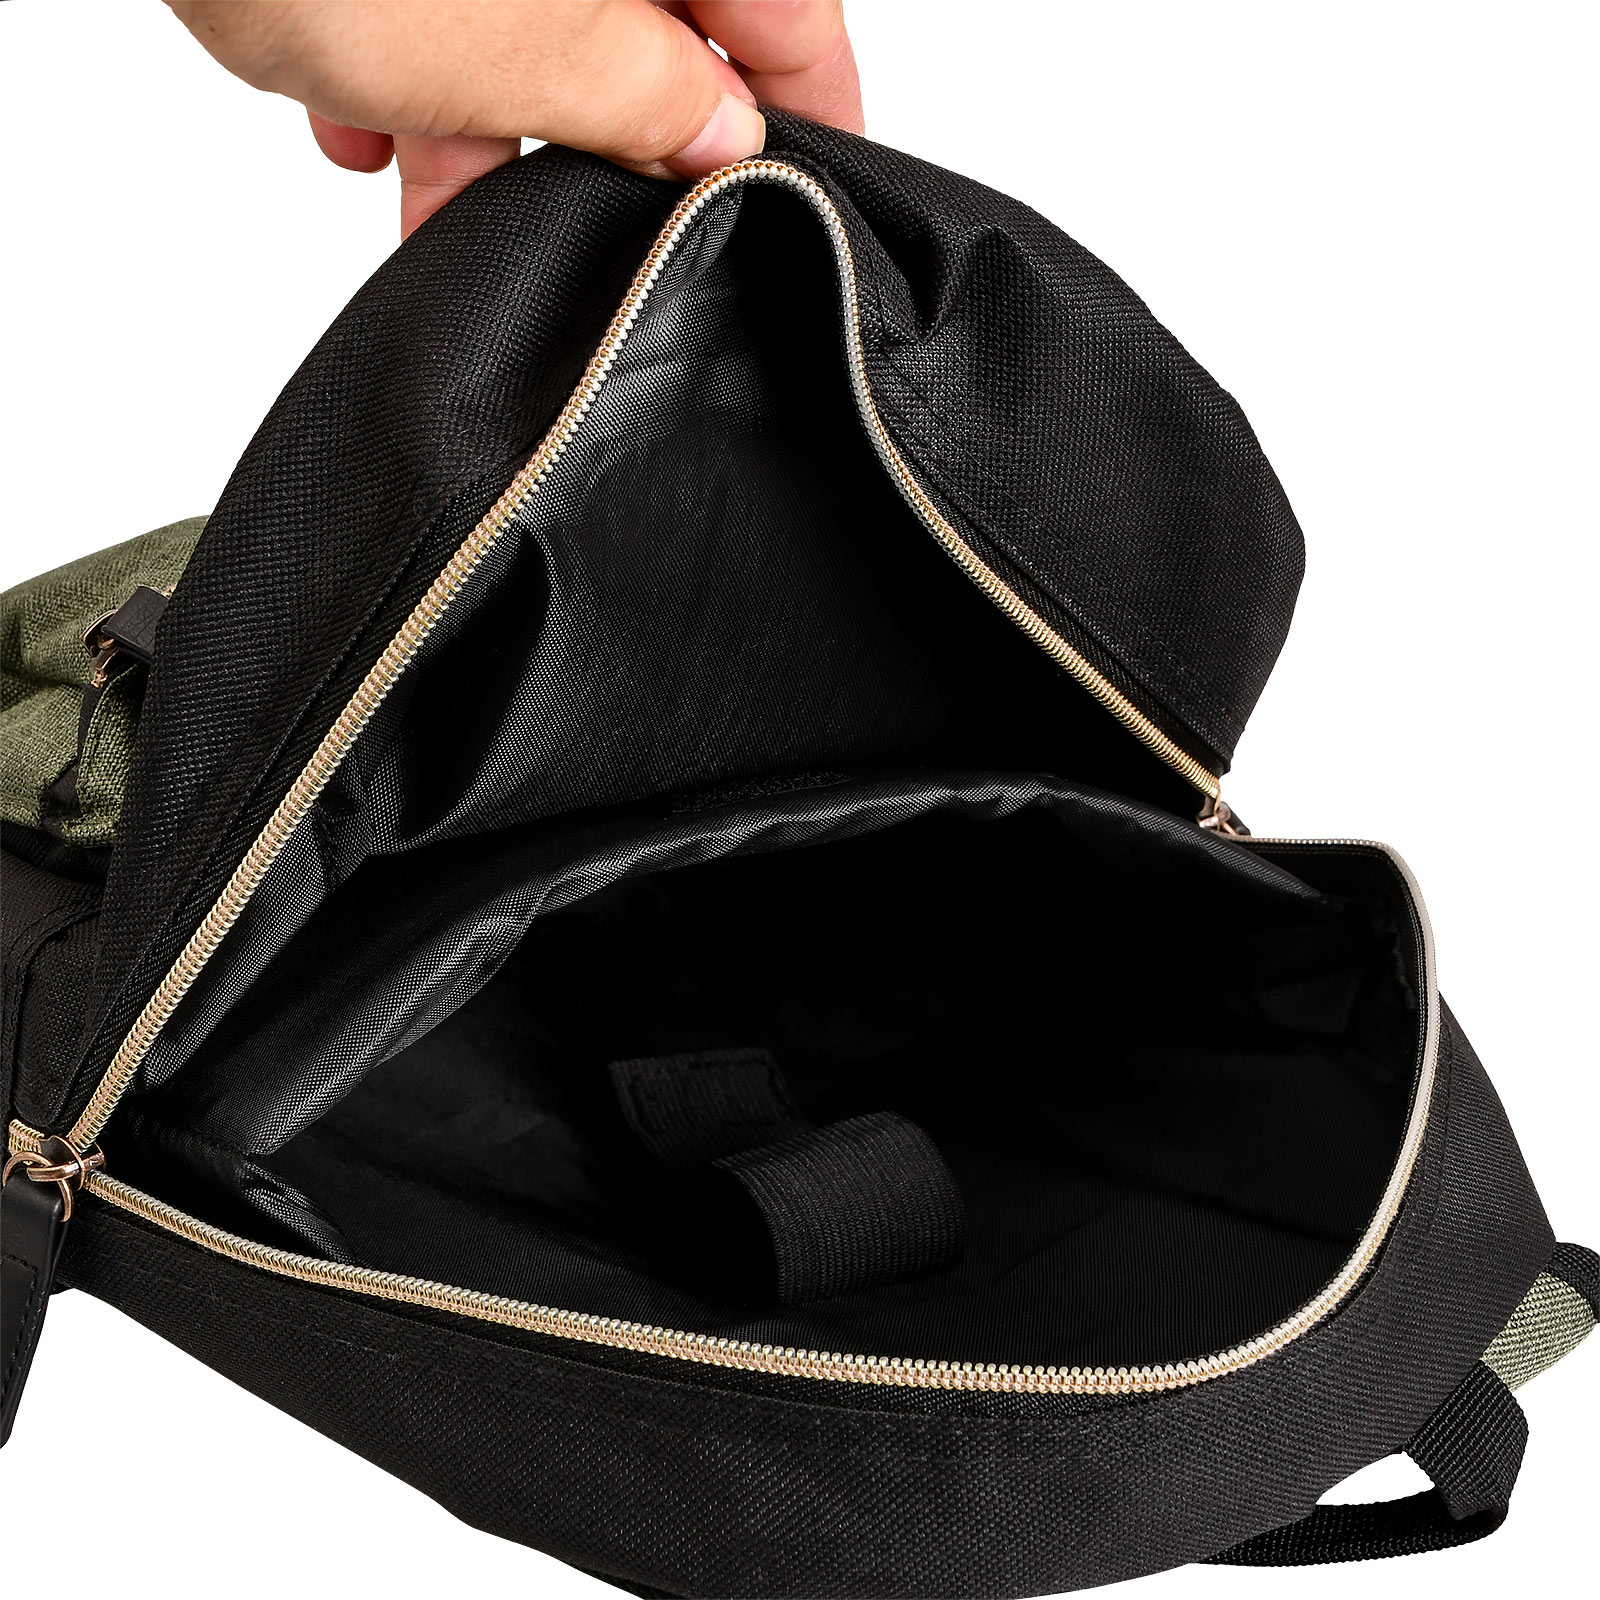 Zelda - Link Wind Waker Backpack for Kids